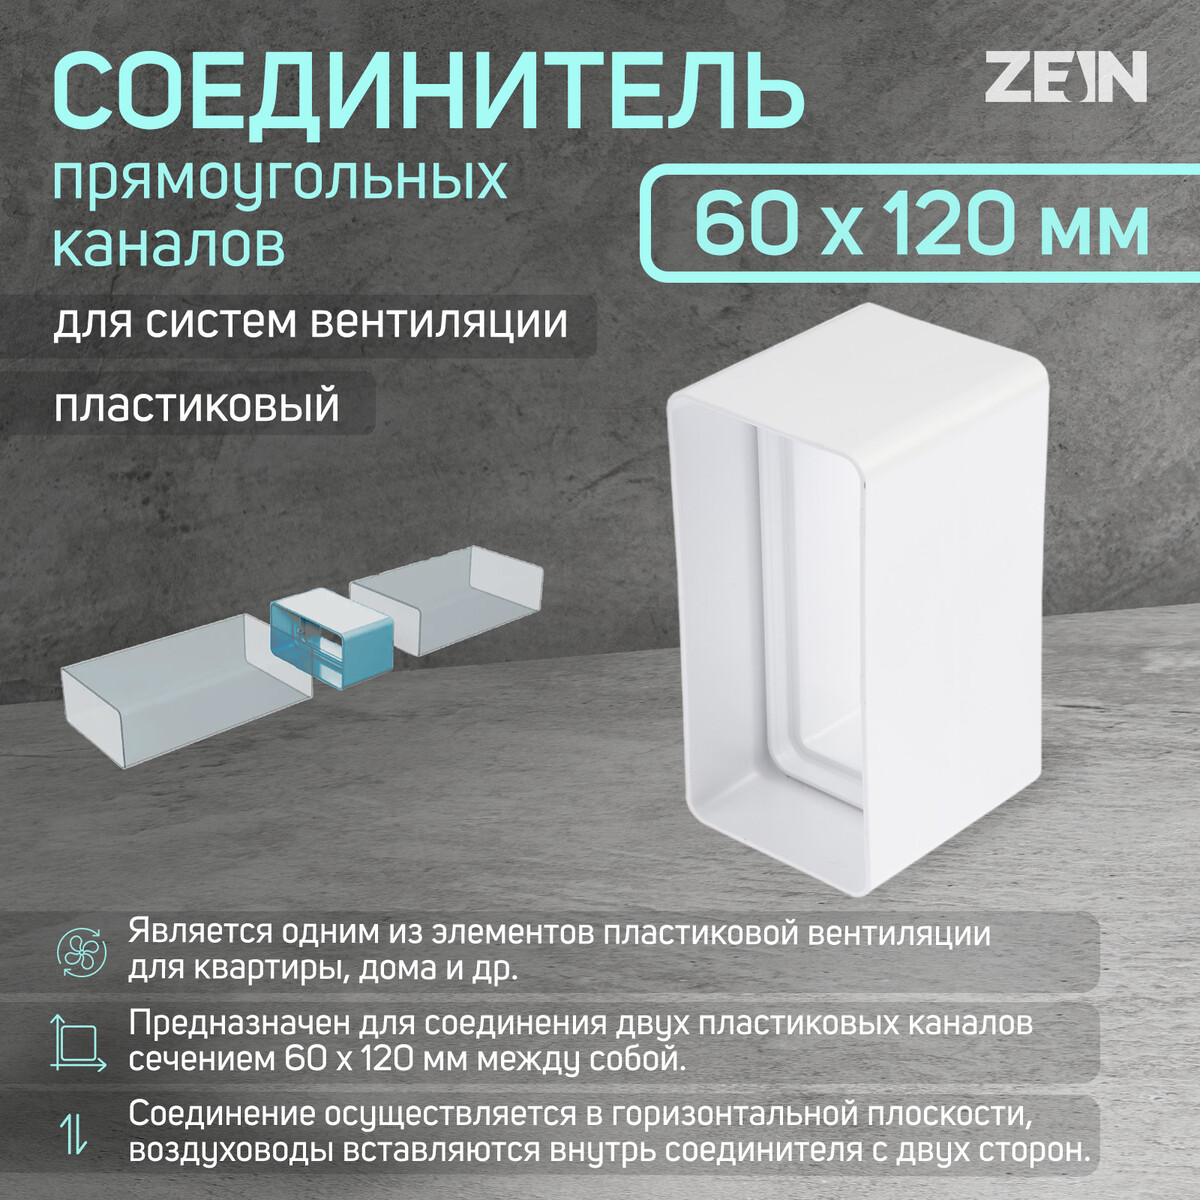 Соединитель вентиляционных каналов zein, 60 х 120 мм